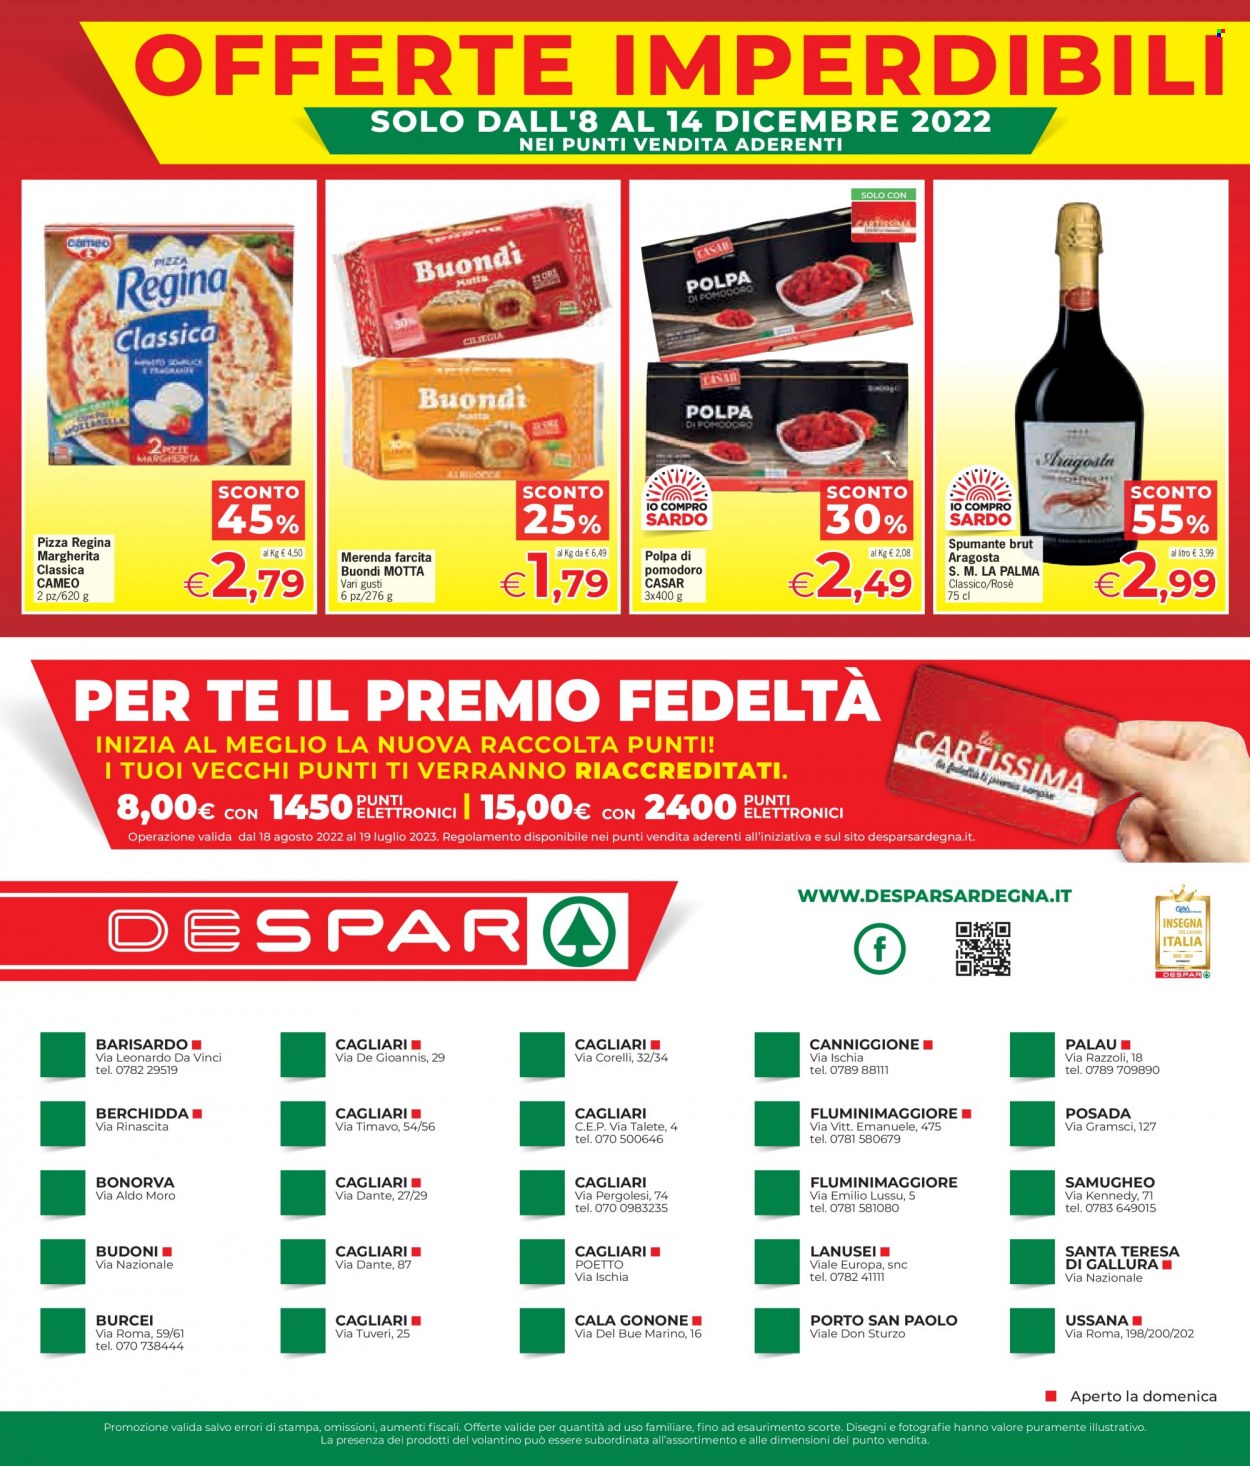 thumbnail - Volantino Despar - 1/12/2022 - 14/12/2022 - Prodotti in offerta - Cameo, Motta, aragosta, pizza, polpa di pomodoro, Spumante. Pagina 8.